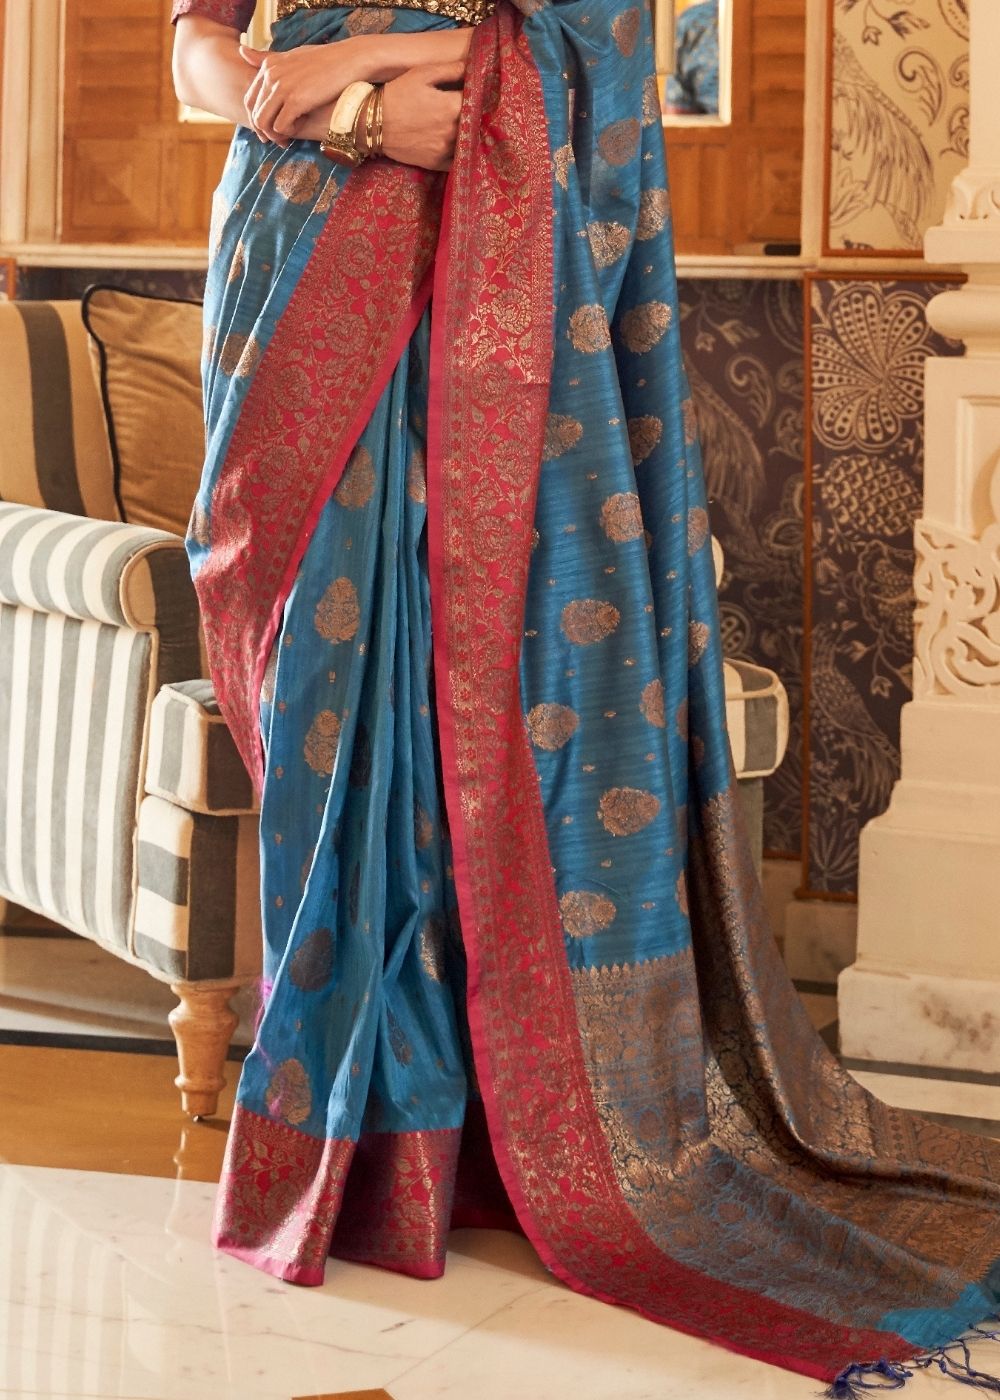 Yale Blue Woven Banarasi Tussar Silk Saree : Top Pick - Colorful Saree